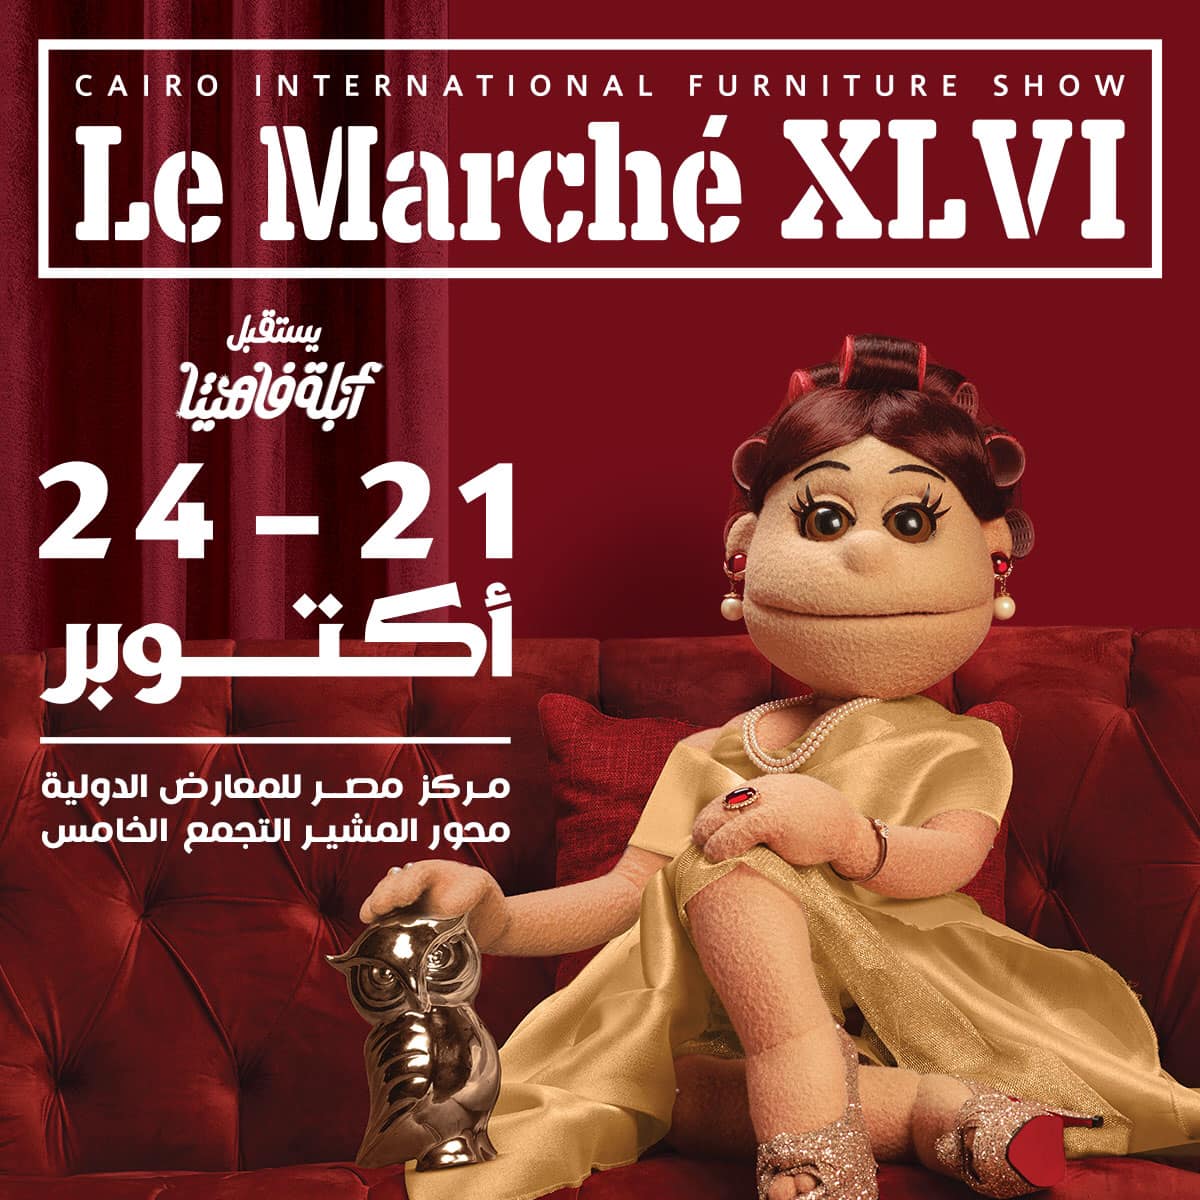 معرض لو مارشيه 2021 من 21 حتى 24 اكتوبر 2021 Le Marche